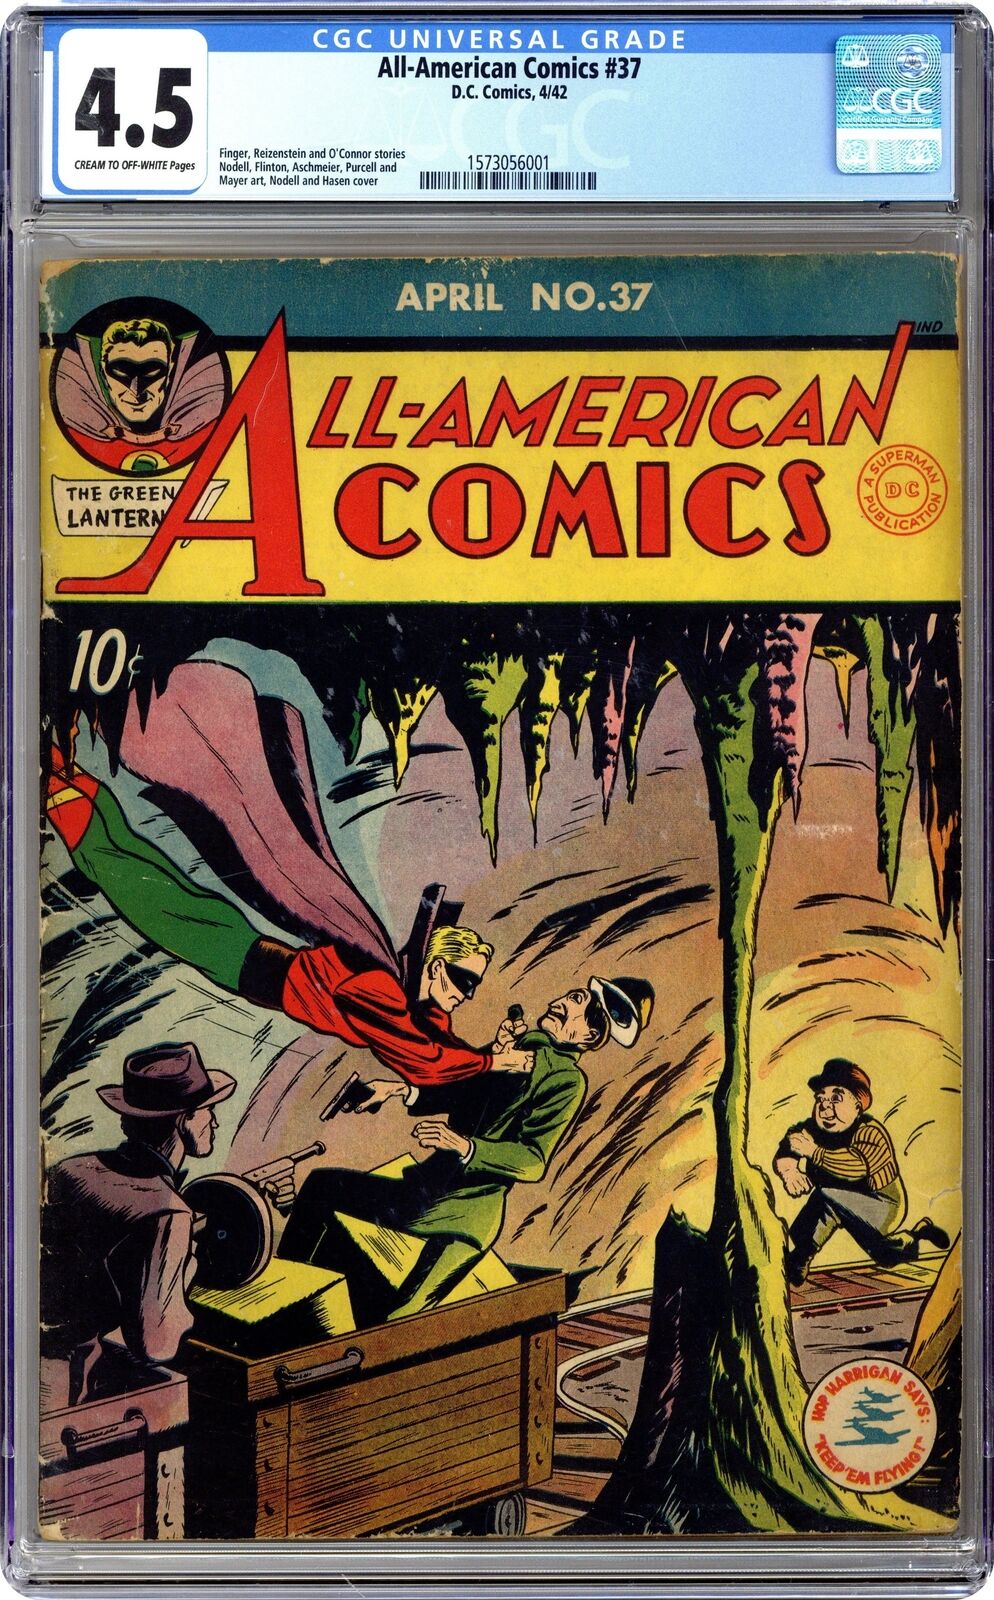 All American Comics #37 CGC 4.5 1942 1573056001